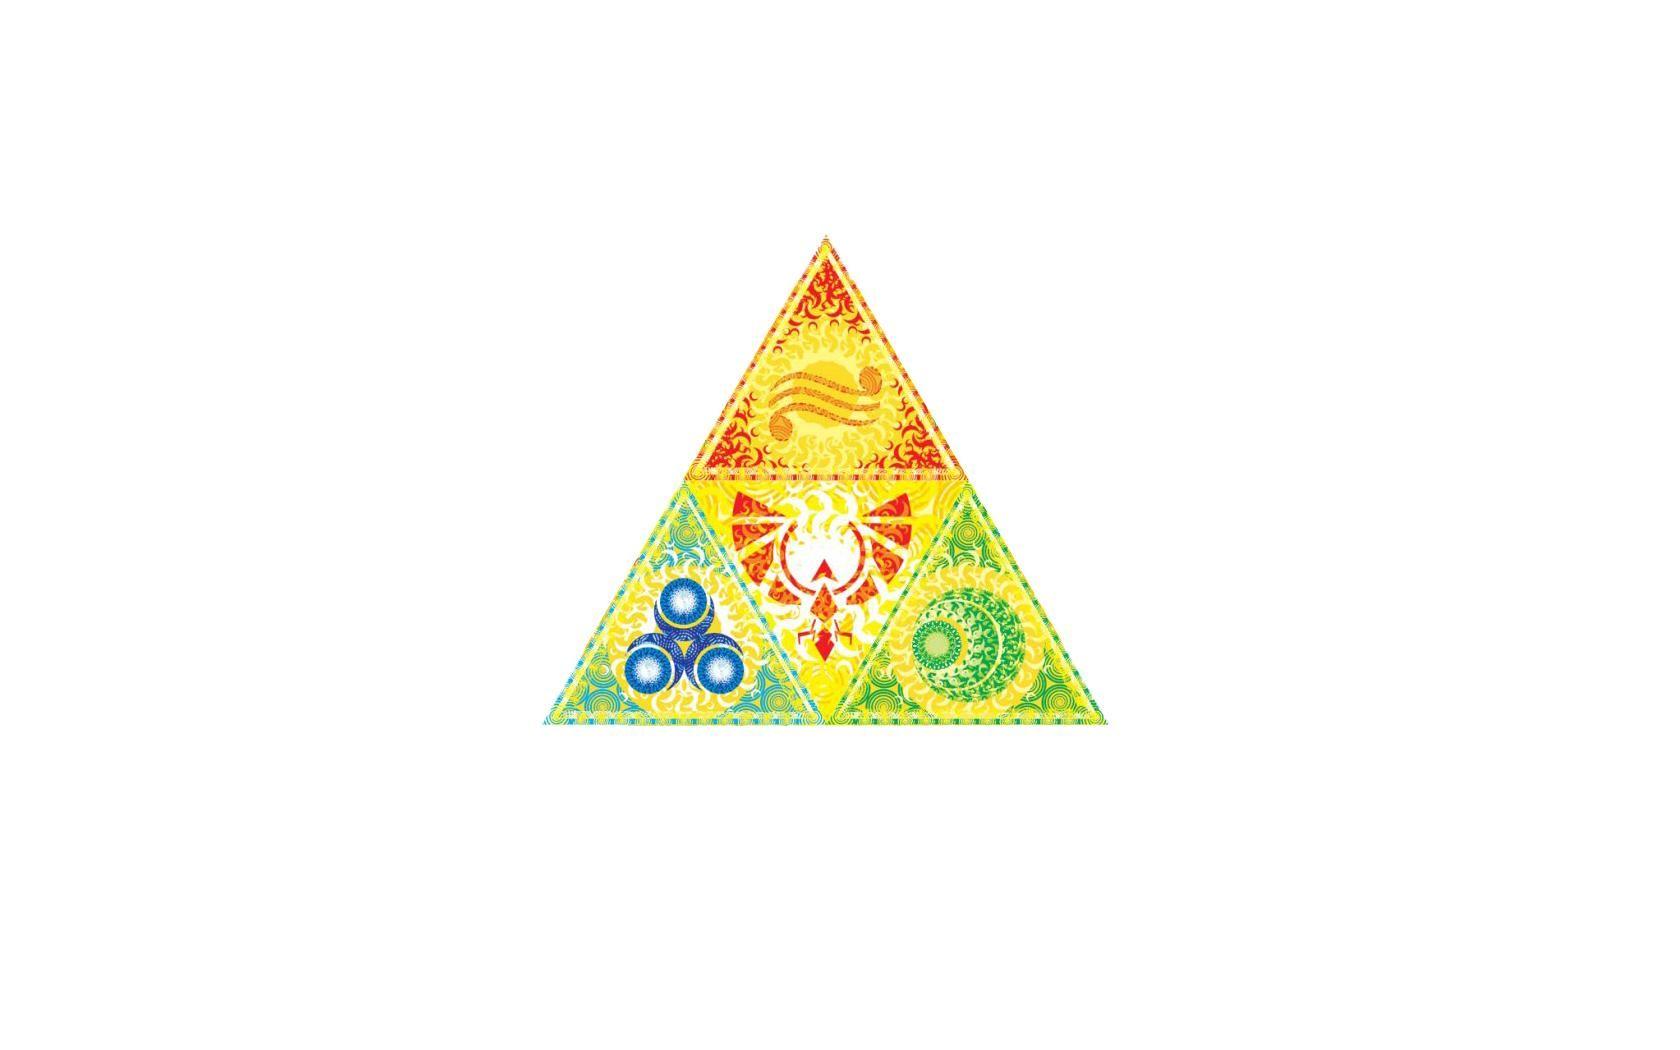 Zelda Triangle Logo - Zelda White Triangle Triforce. The Jester's Corner